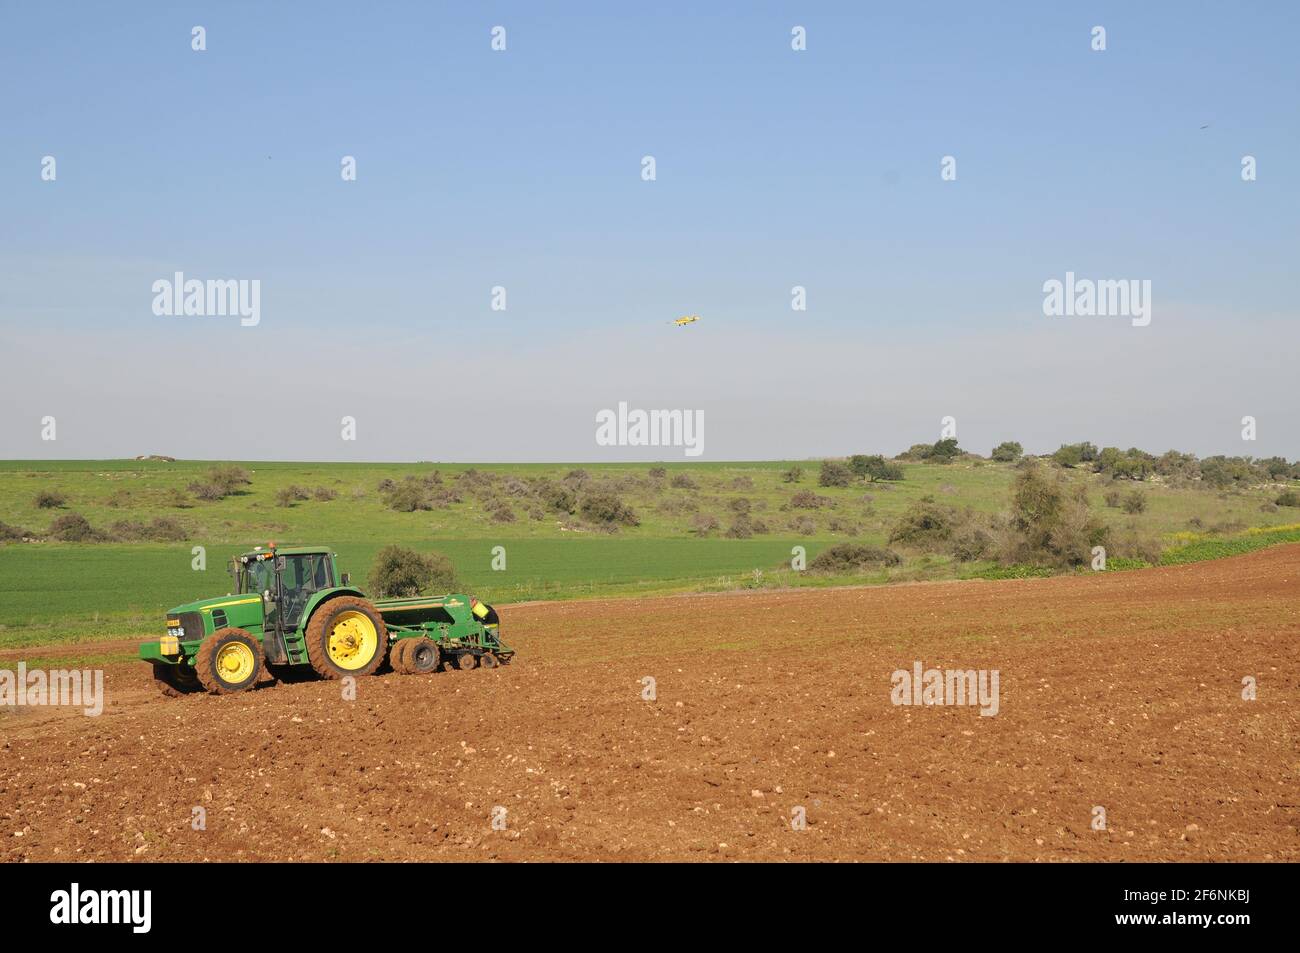 Ein Pflanzgefäß ist ein landwirtschaftlicher Anbaugerät, der normalerweise hinter einem Traktor geschleppt wird und Samen in Reihen auf einem Feld sät Stockfoto